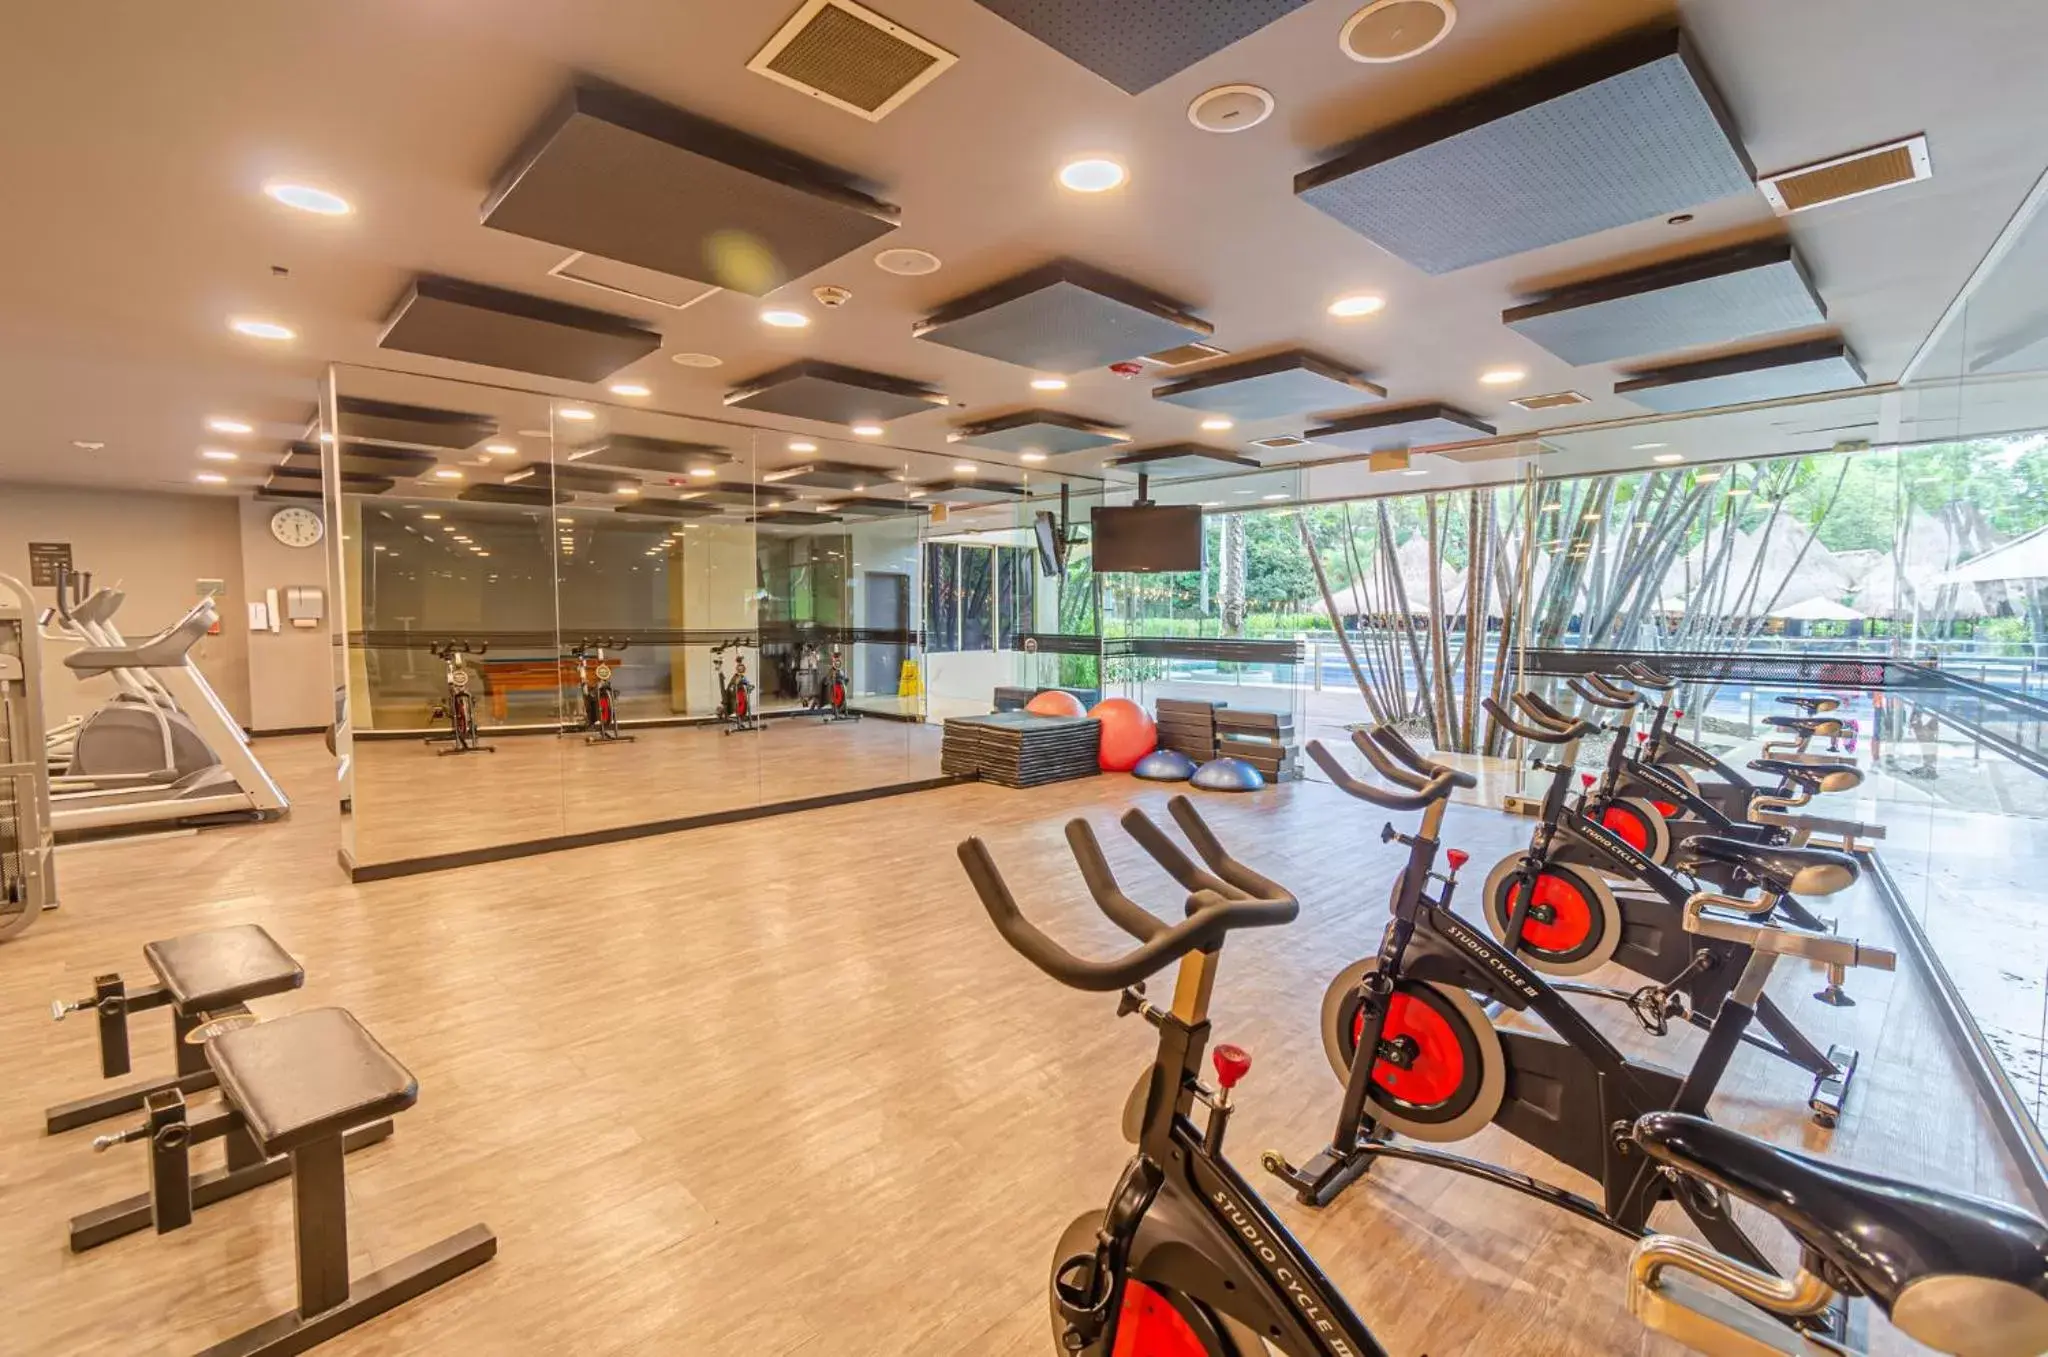 Fitness centre/facilities, Fitness Center/Facilities in Hotel Intercontinental Medellín, an IHG Hotel